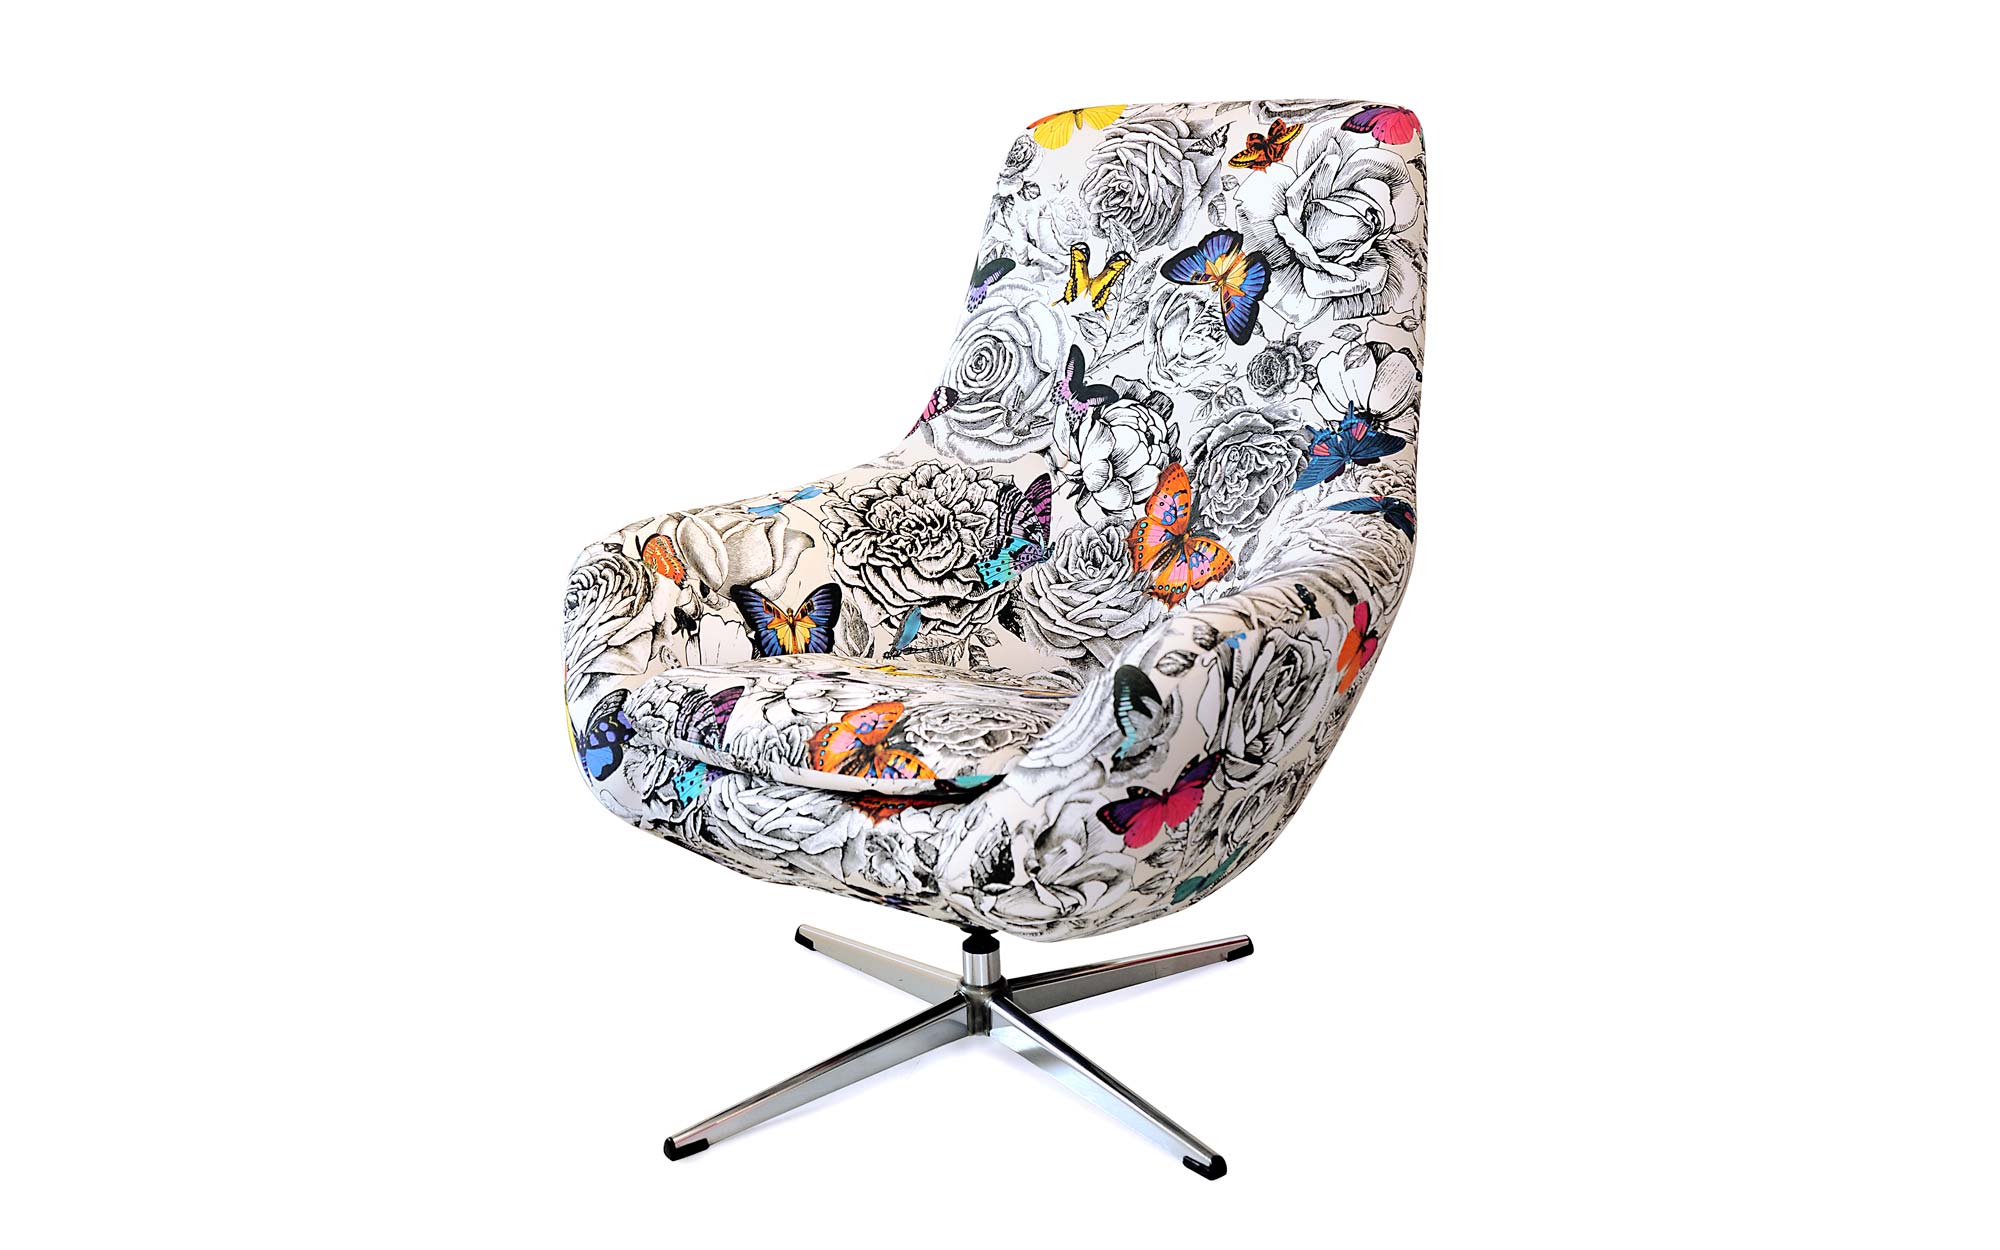 lorraine osborne/butterfly chair in gallery